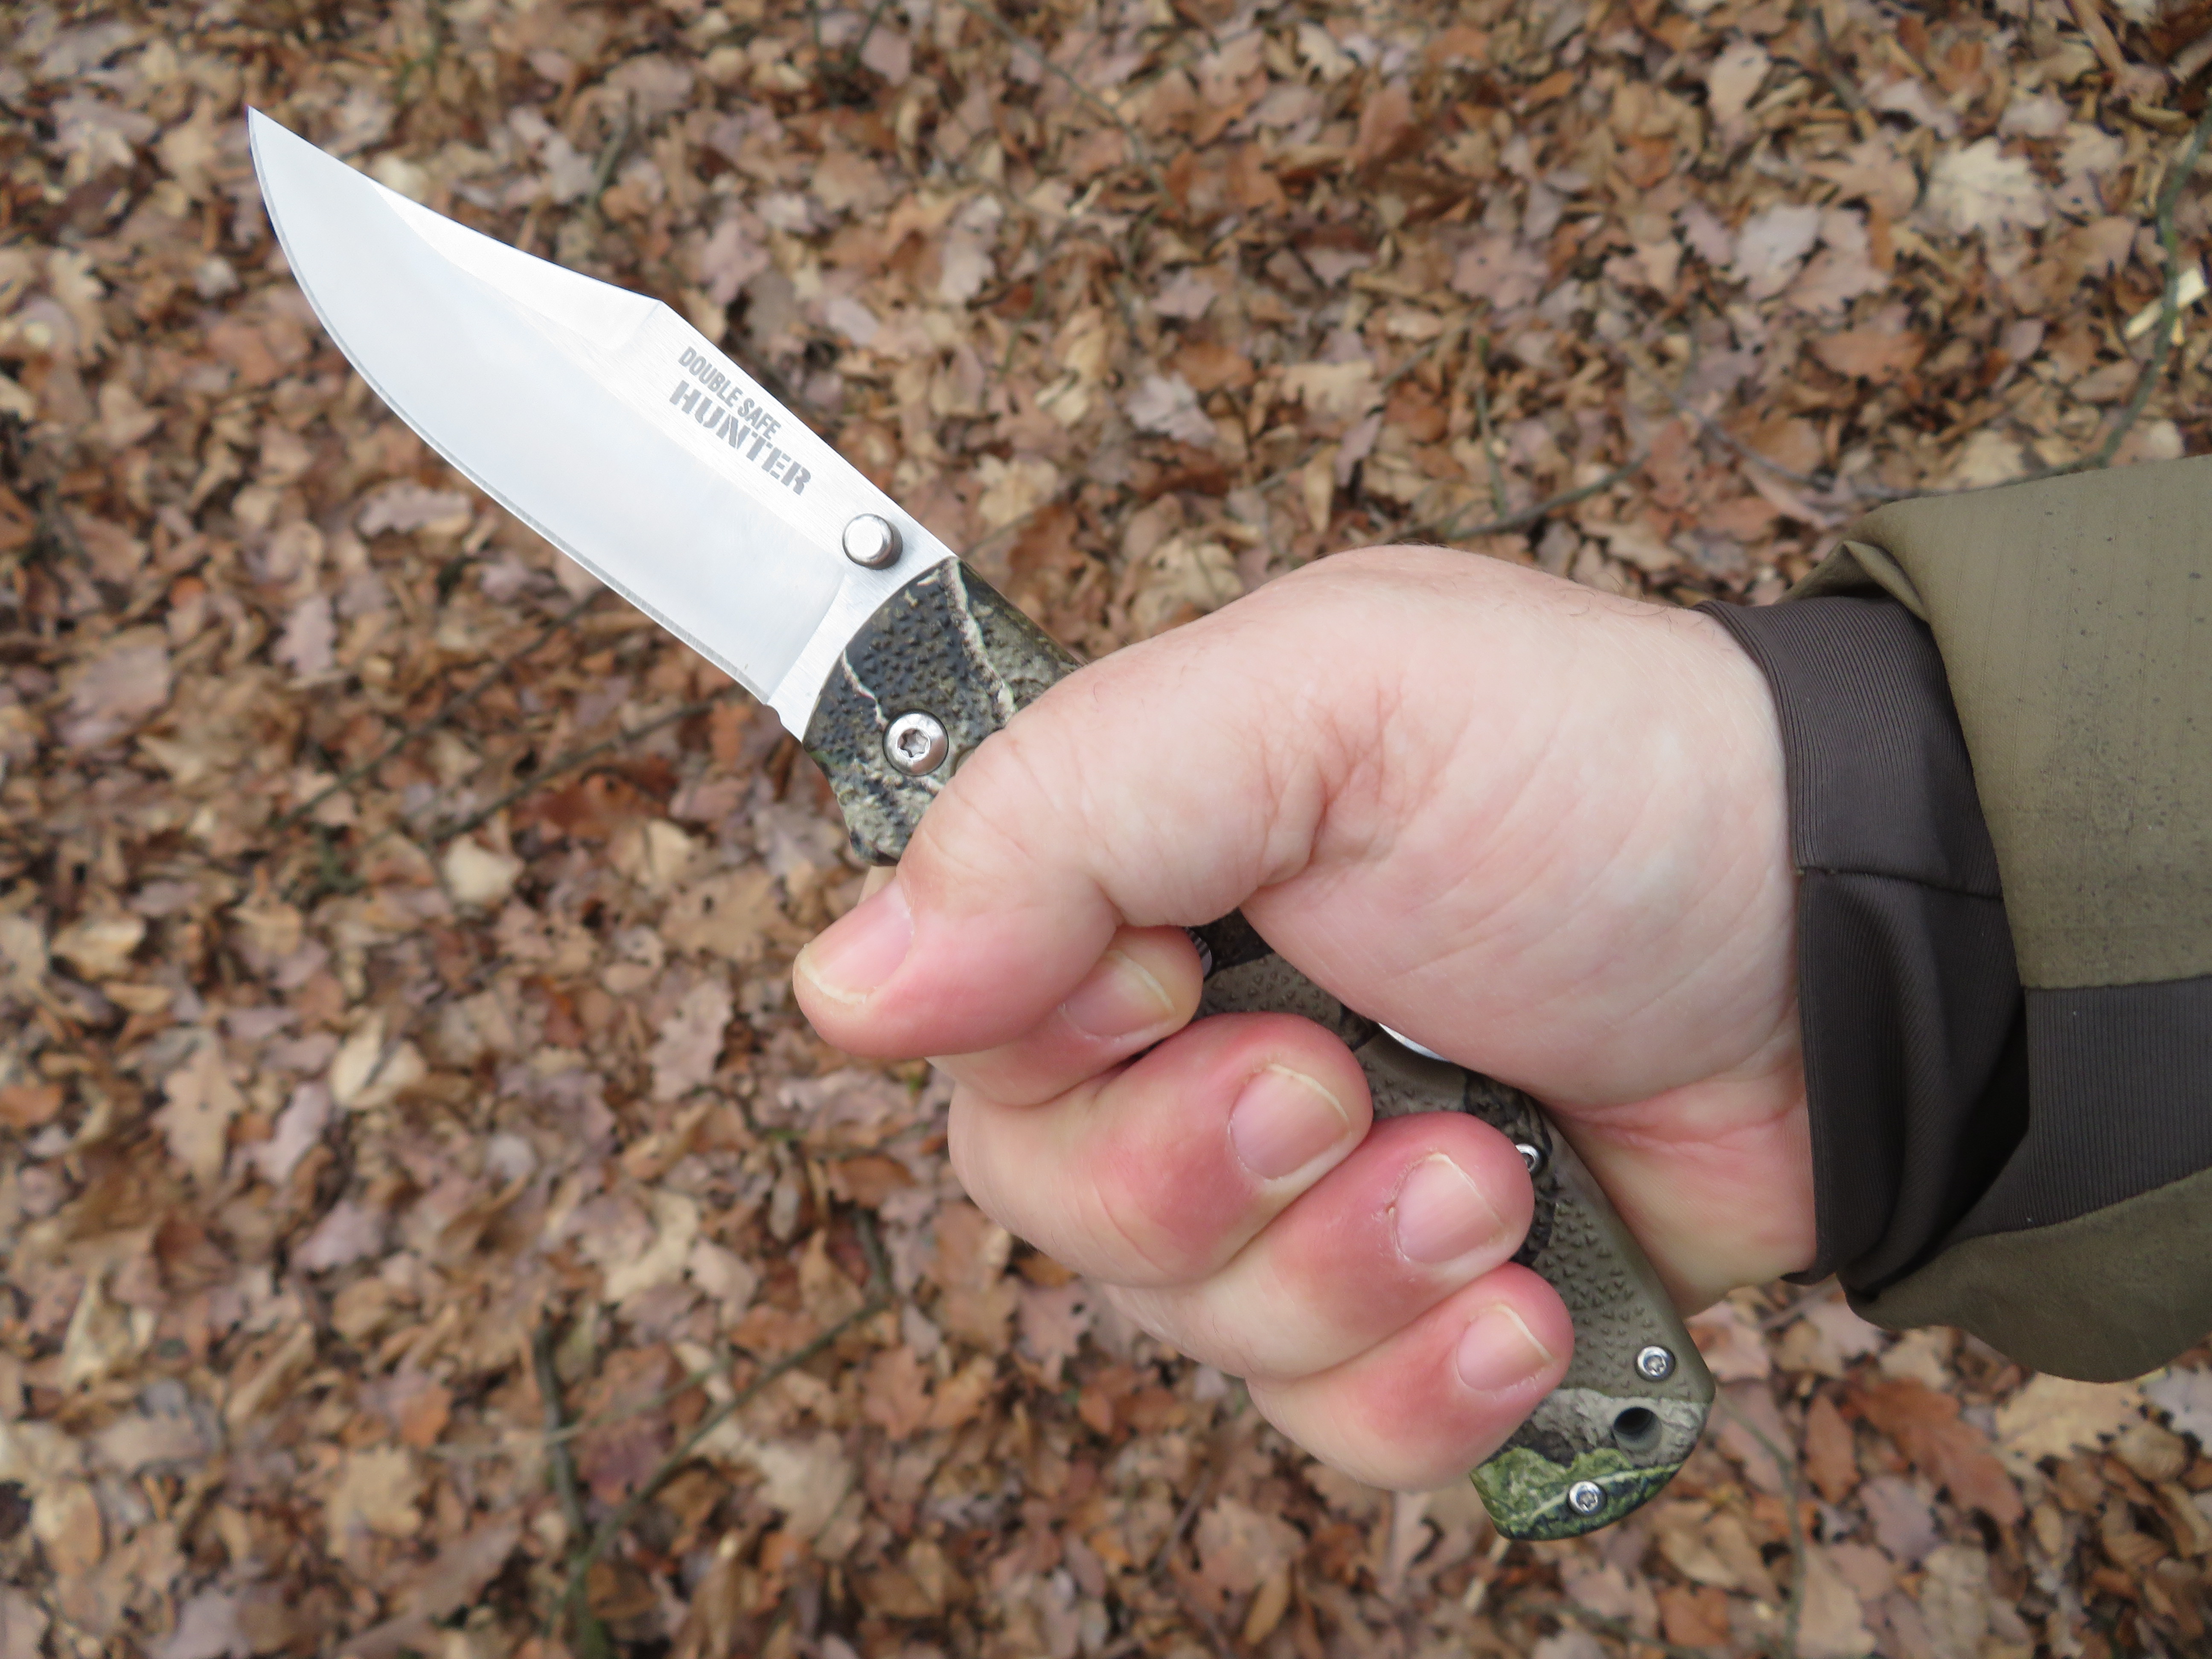 Rukojeť nože Cold Steel Double Safe Hunter je tvořena materiálem GFN, což je nylon zpevněný skelnými vlákny. 